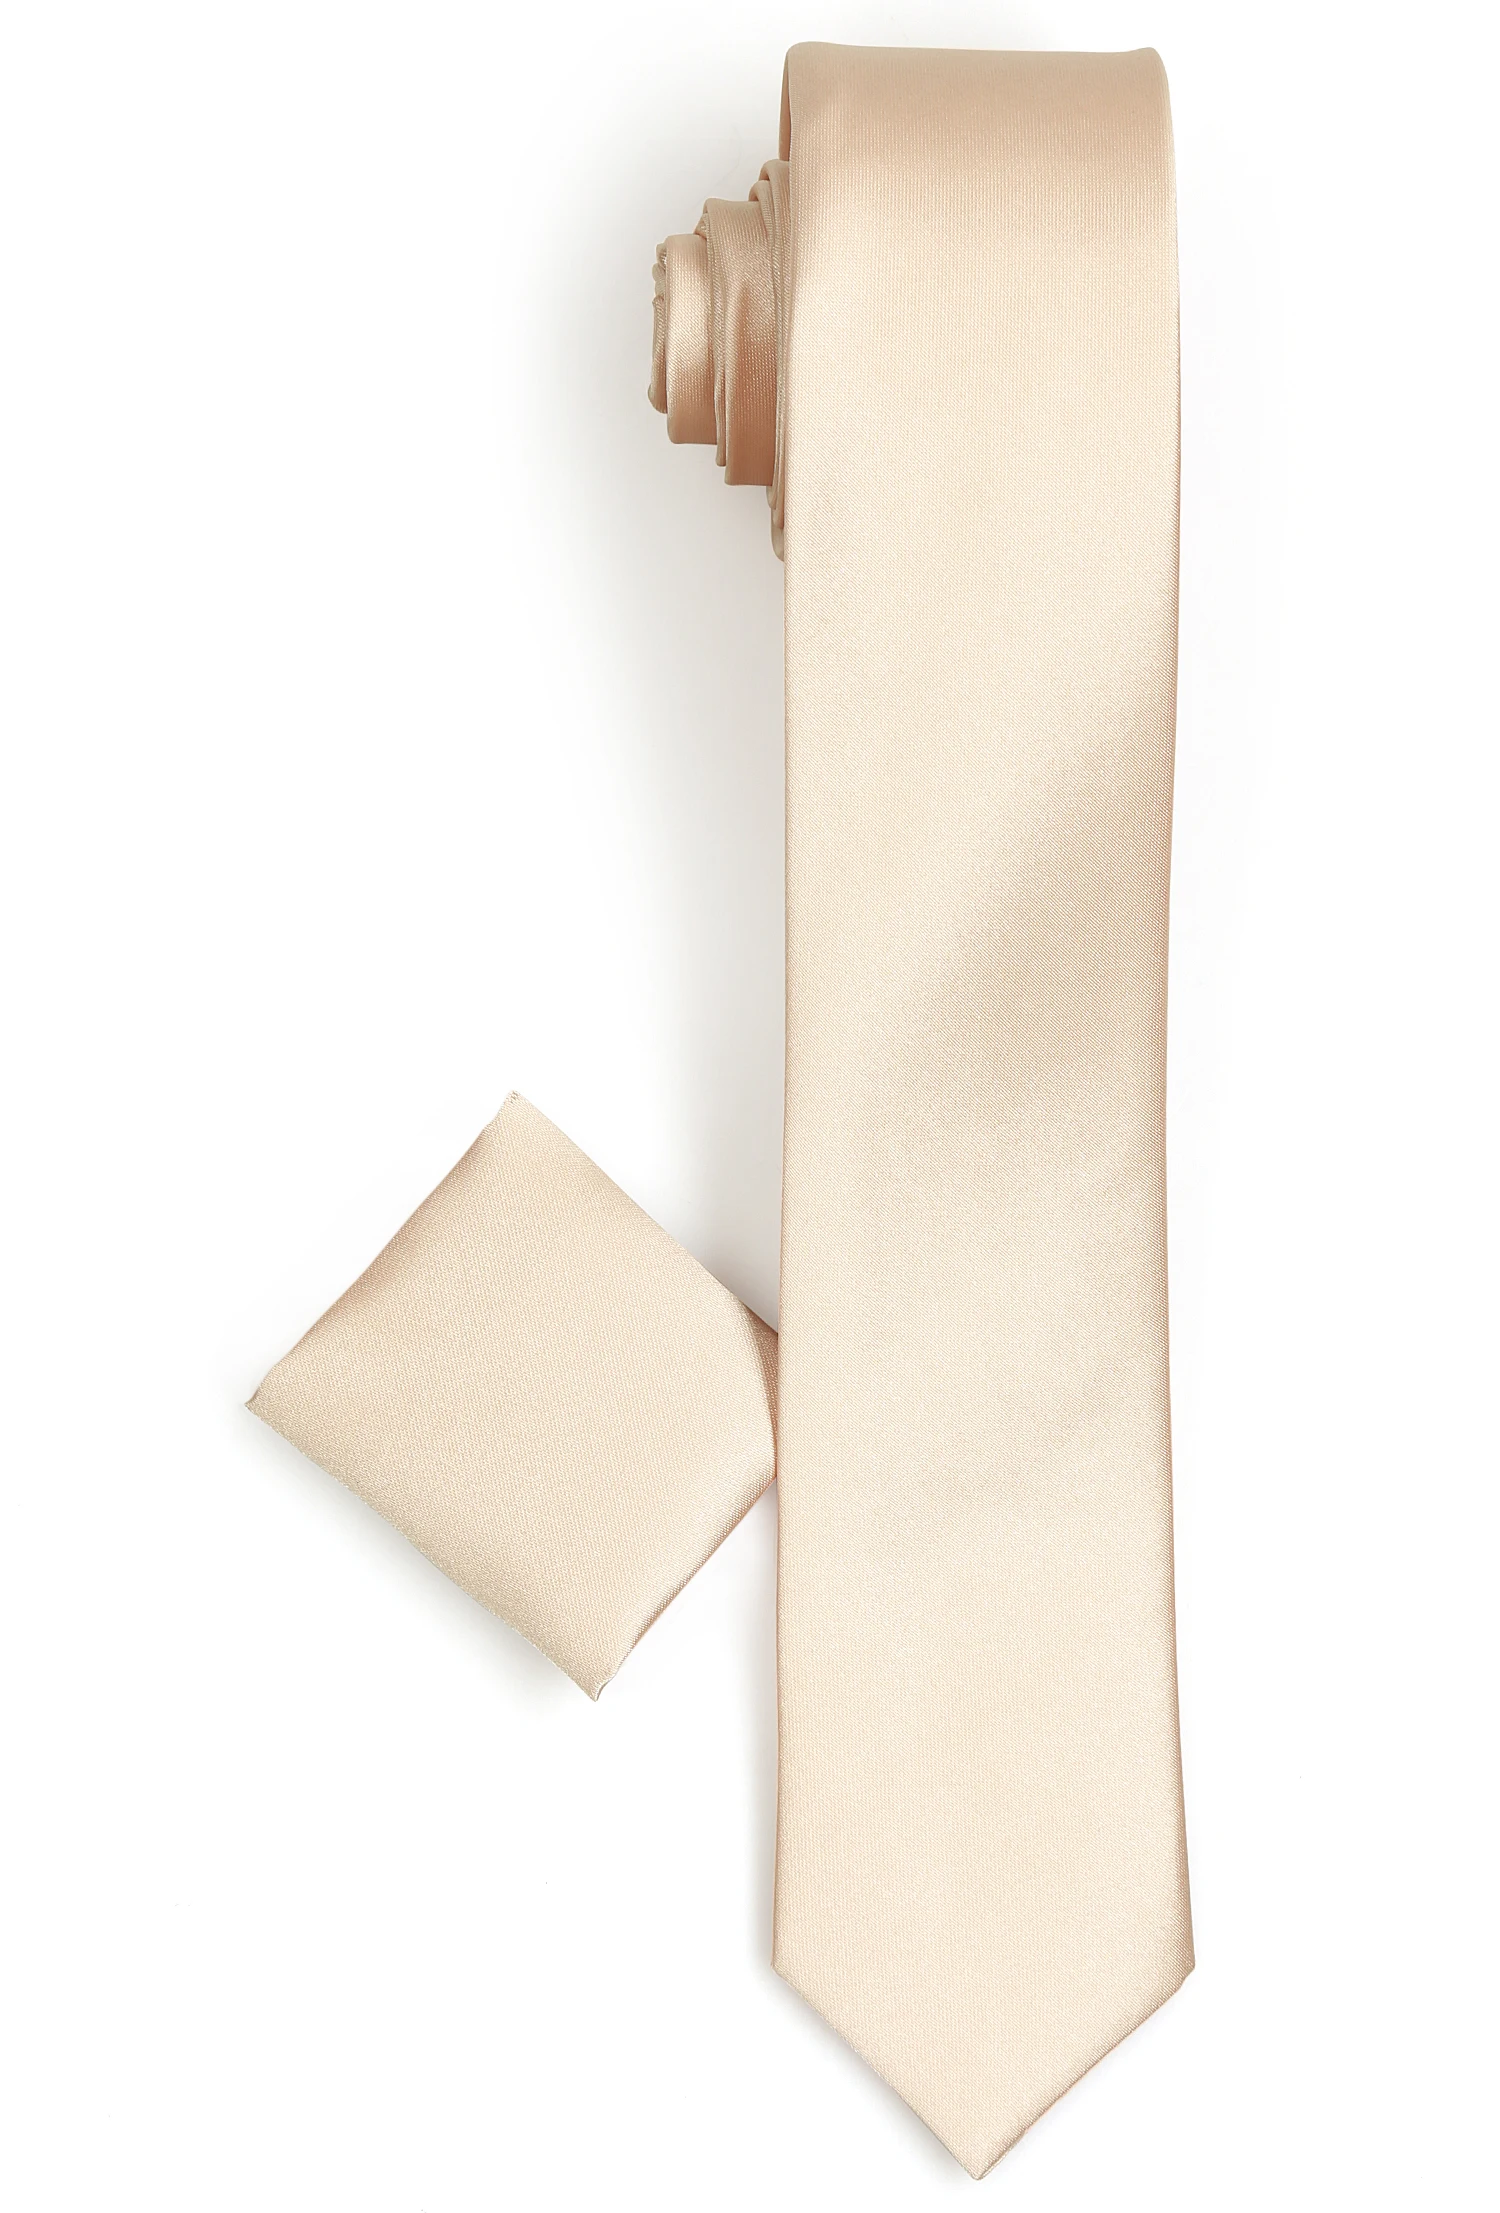 Мужской галстук-бабочка Varetta, однотонные серые галстуки для взрослых, Полиэстеровые Галстуки одного размера, галстук krawatte, Сделано в Турции от AliExpress WW